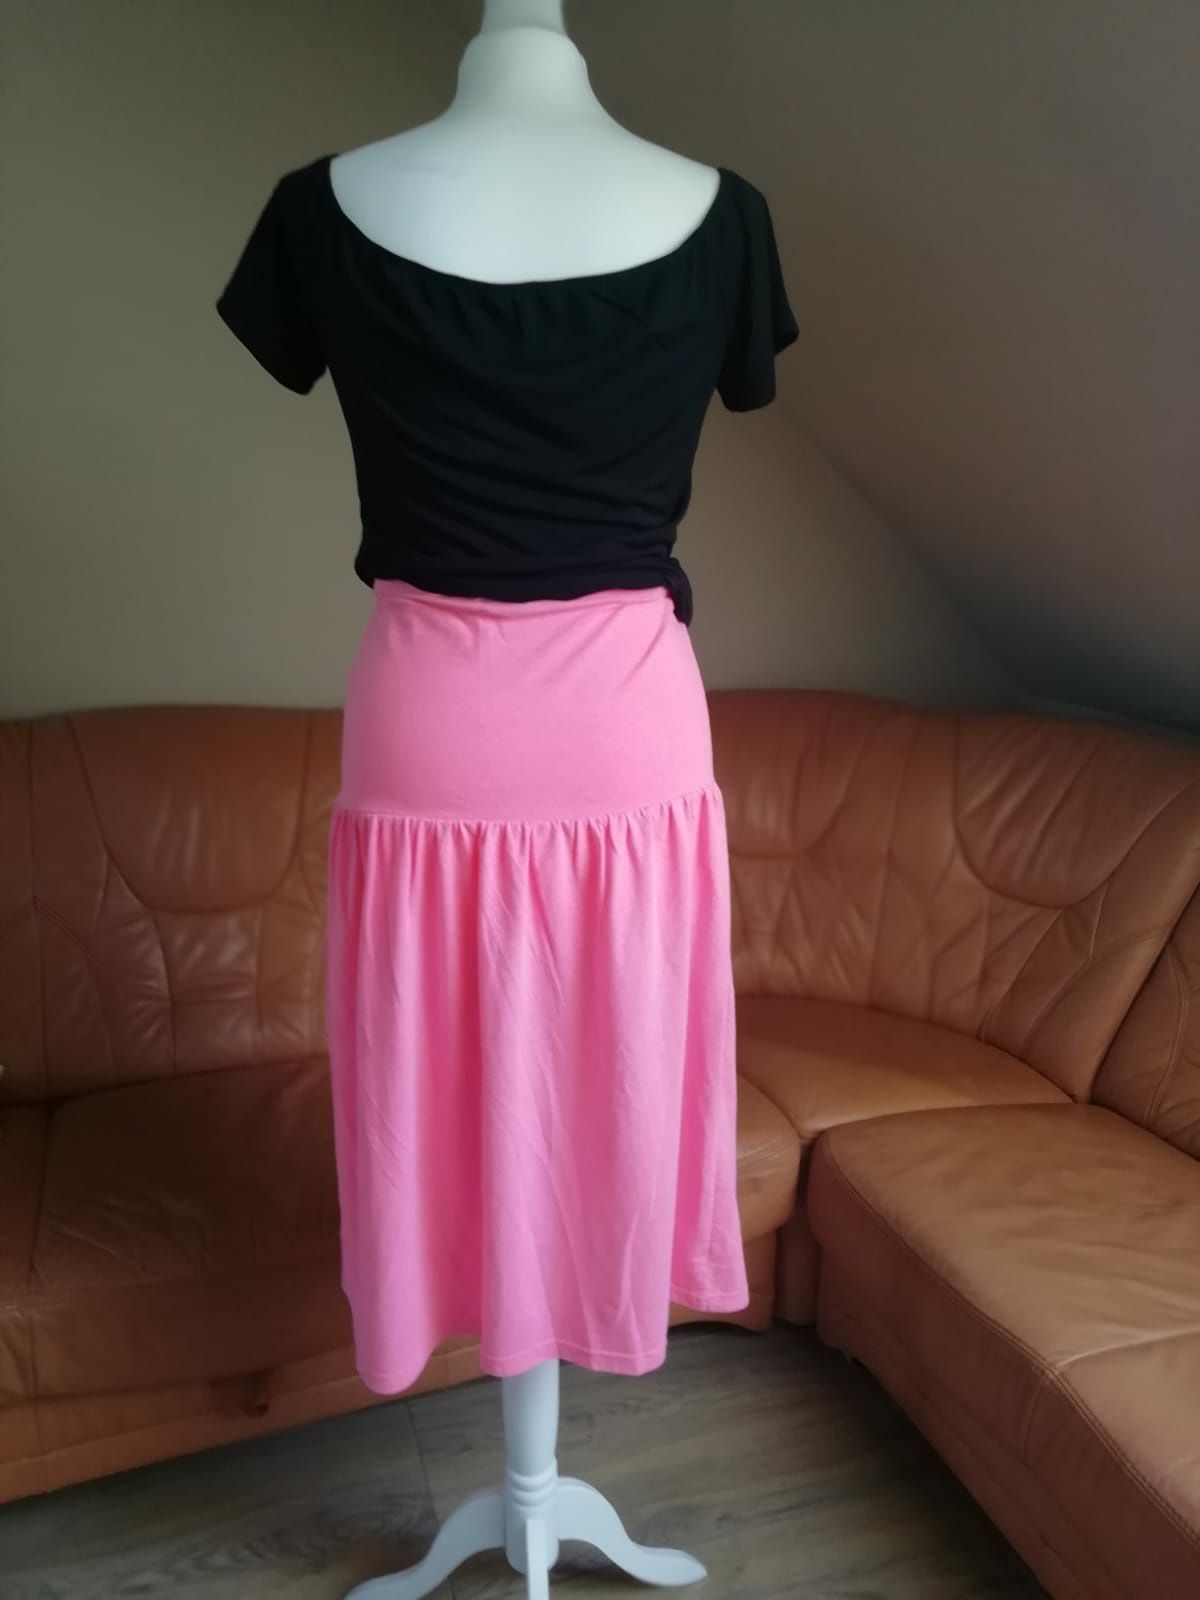 Spódnica midi/sukienka F&F, neonowy róż, barbie core